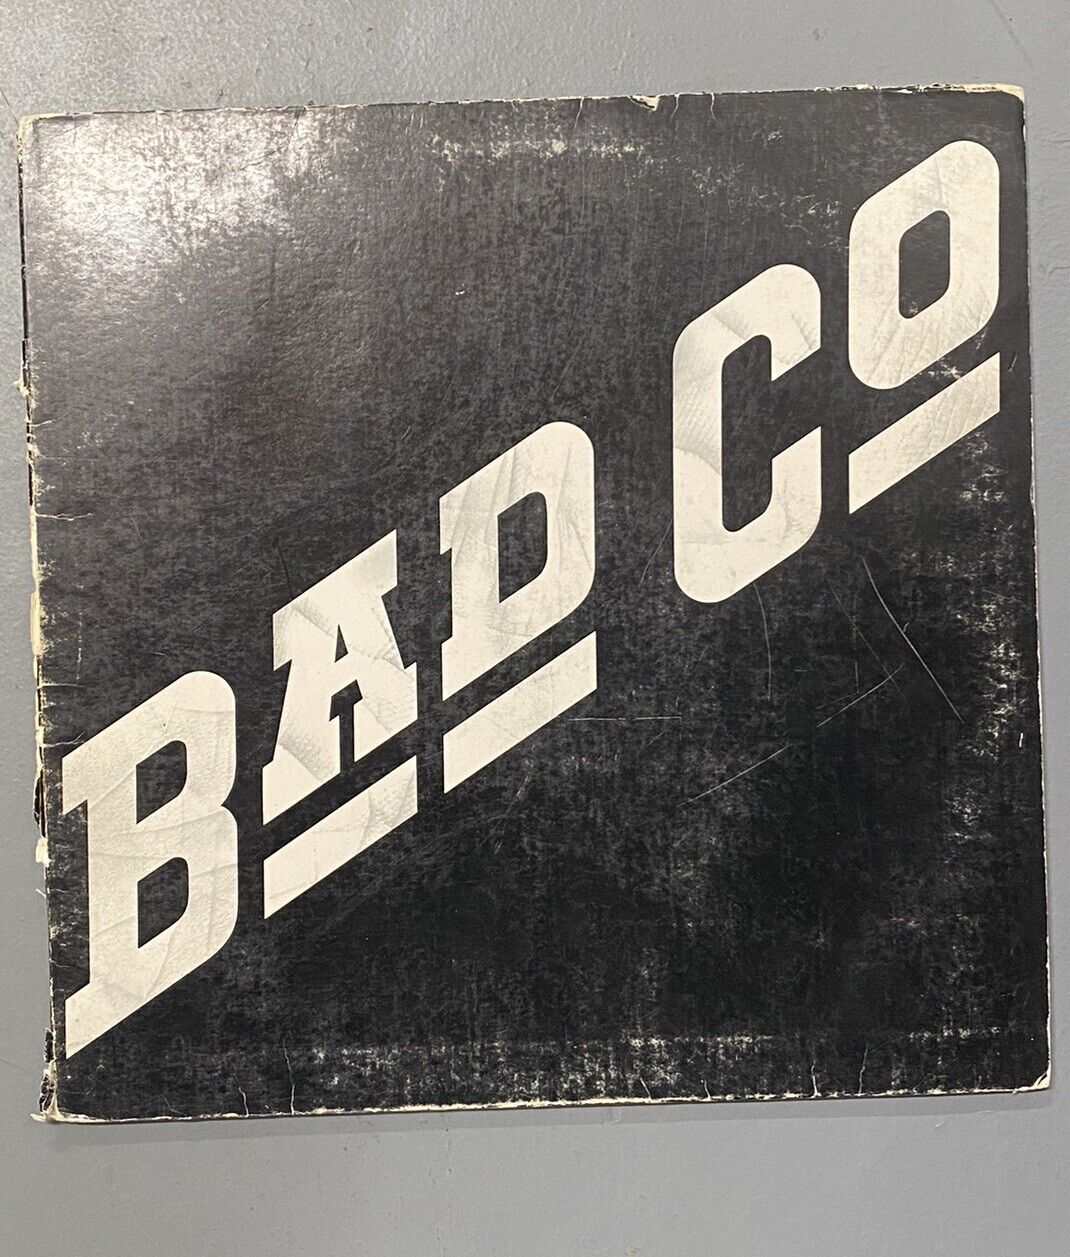 Bad Company Self Titled Vinyl LP 1974